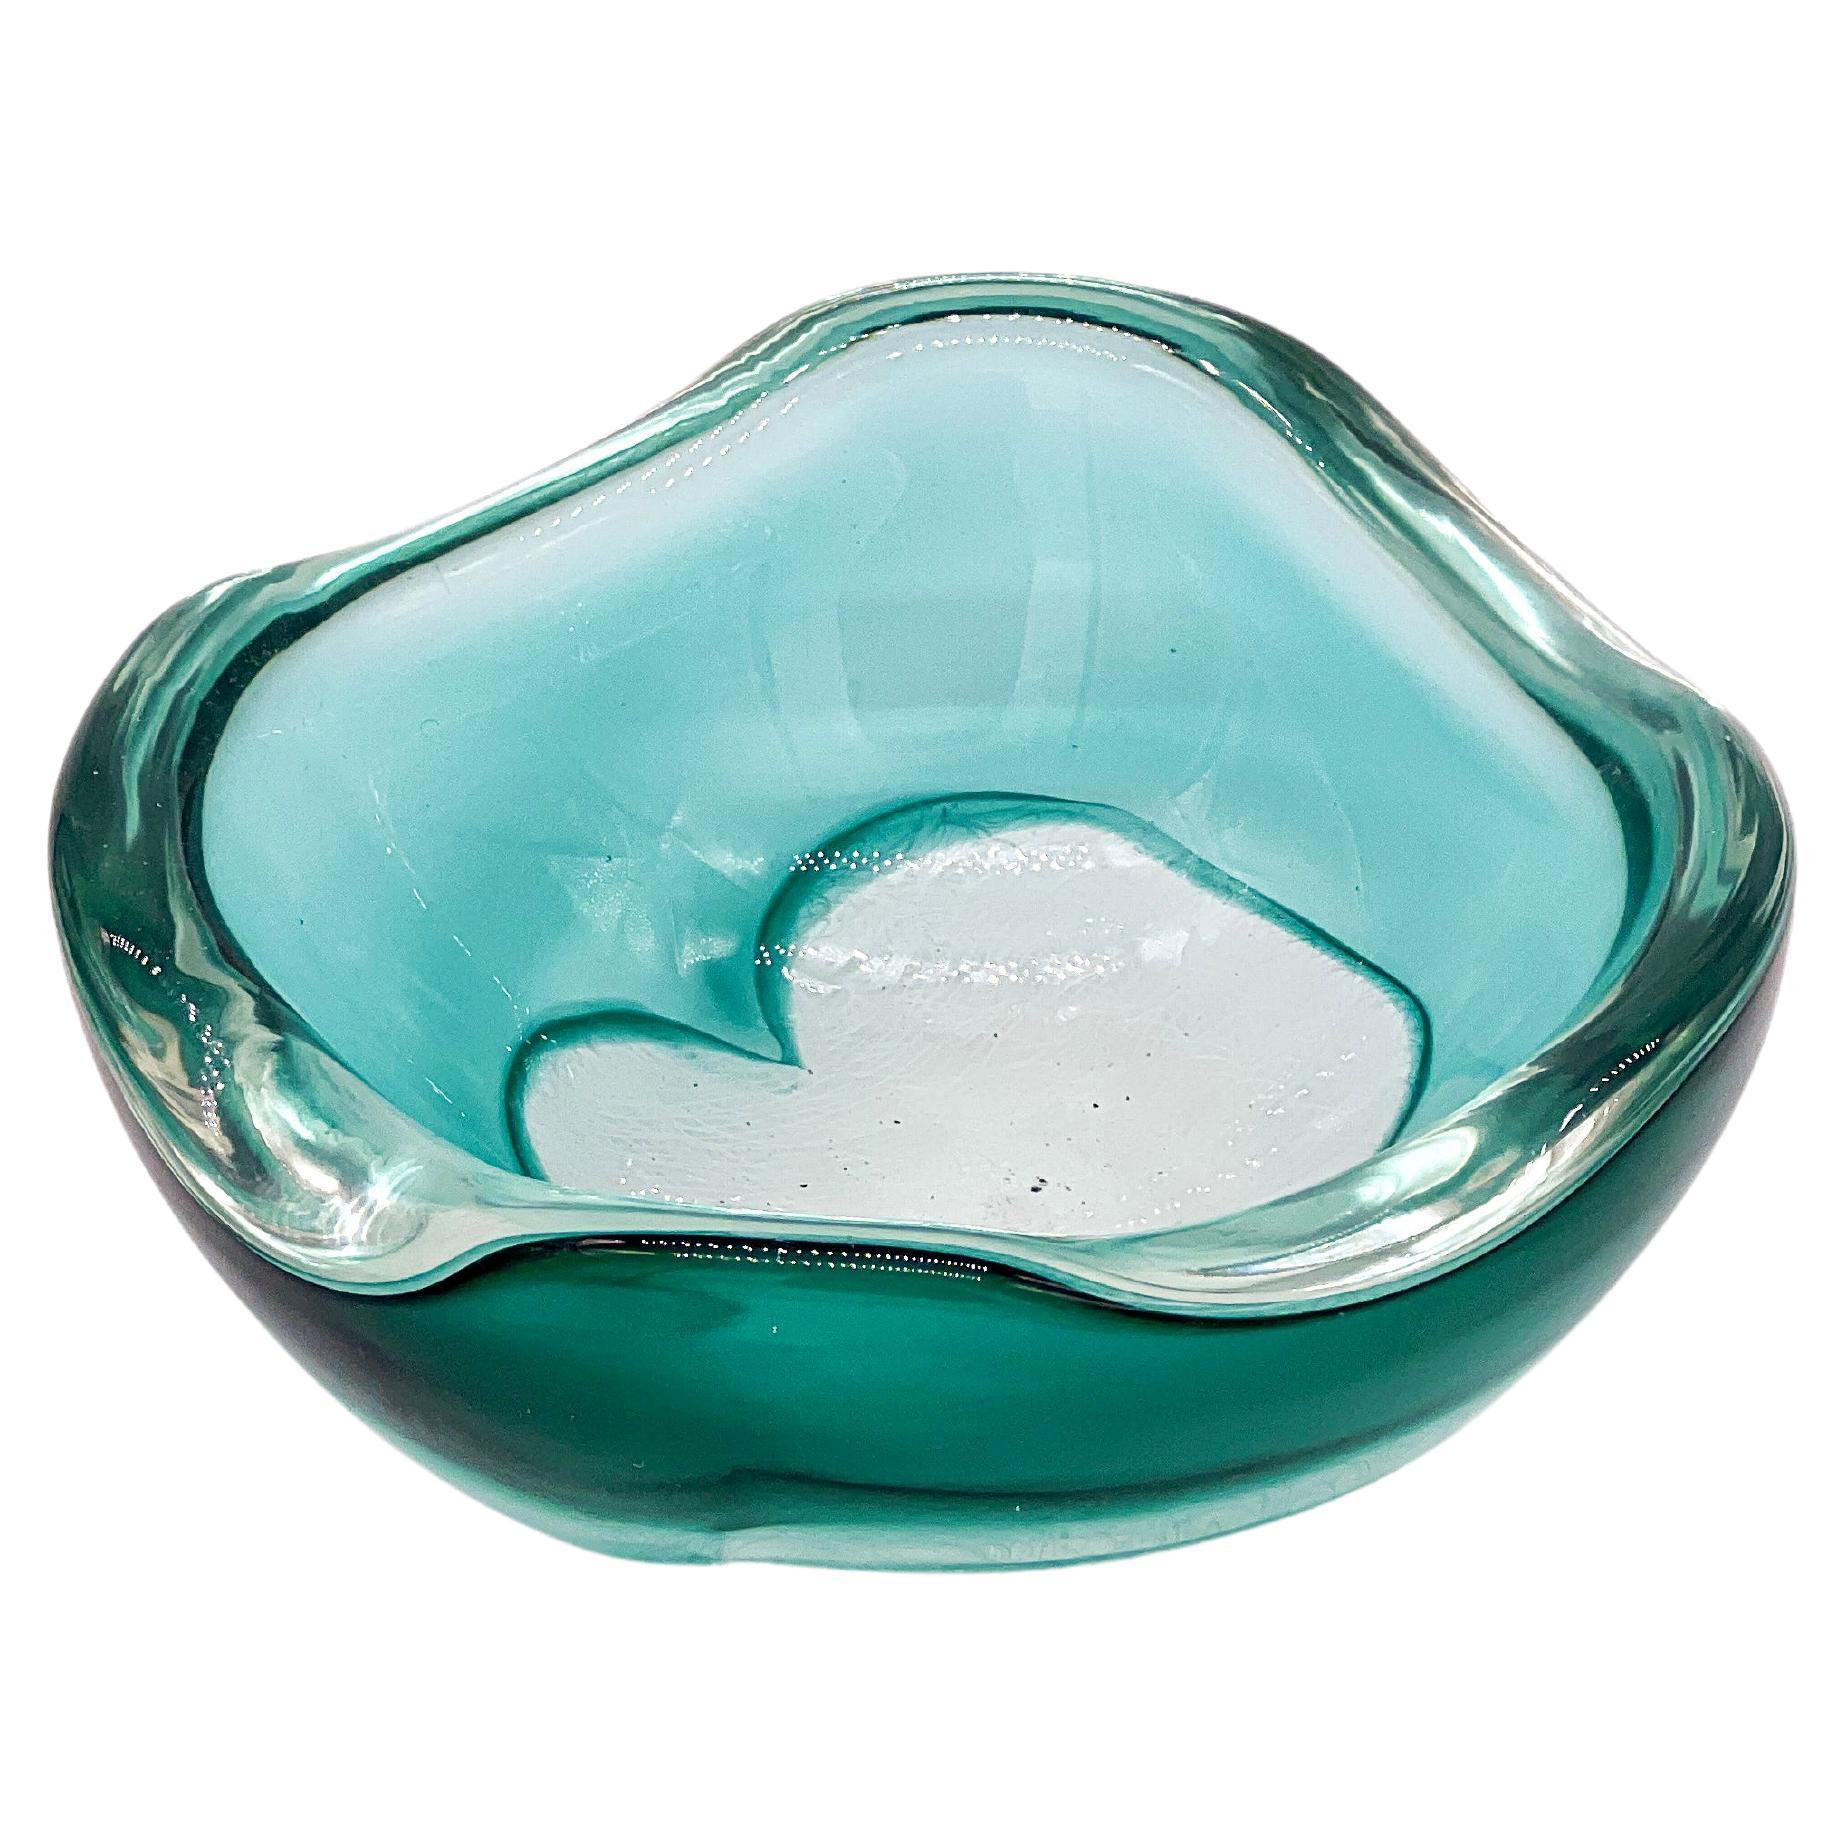 Archimede Seguso "Merletto" Murano bowl, Aquamarine Green and White Filigree For Sale